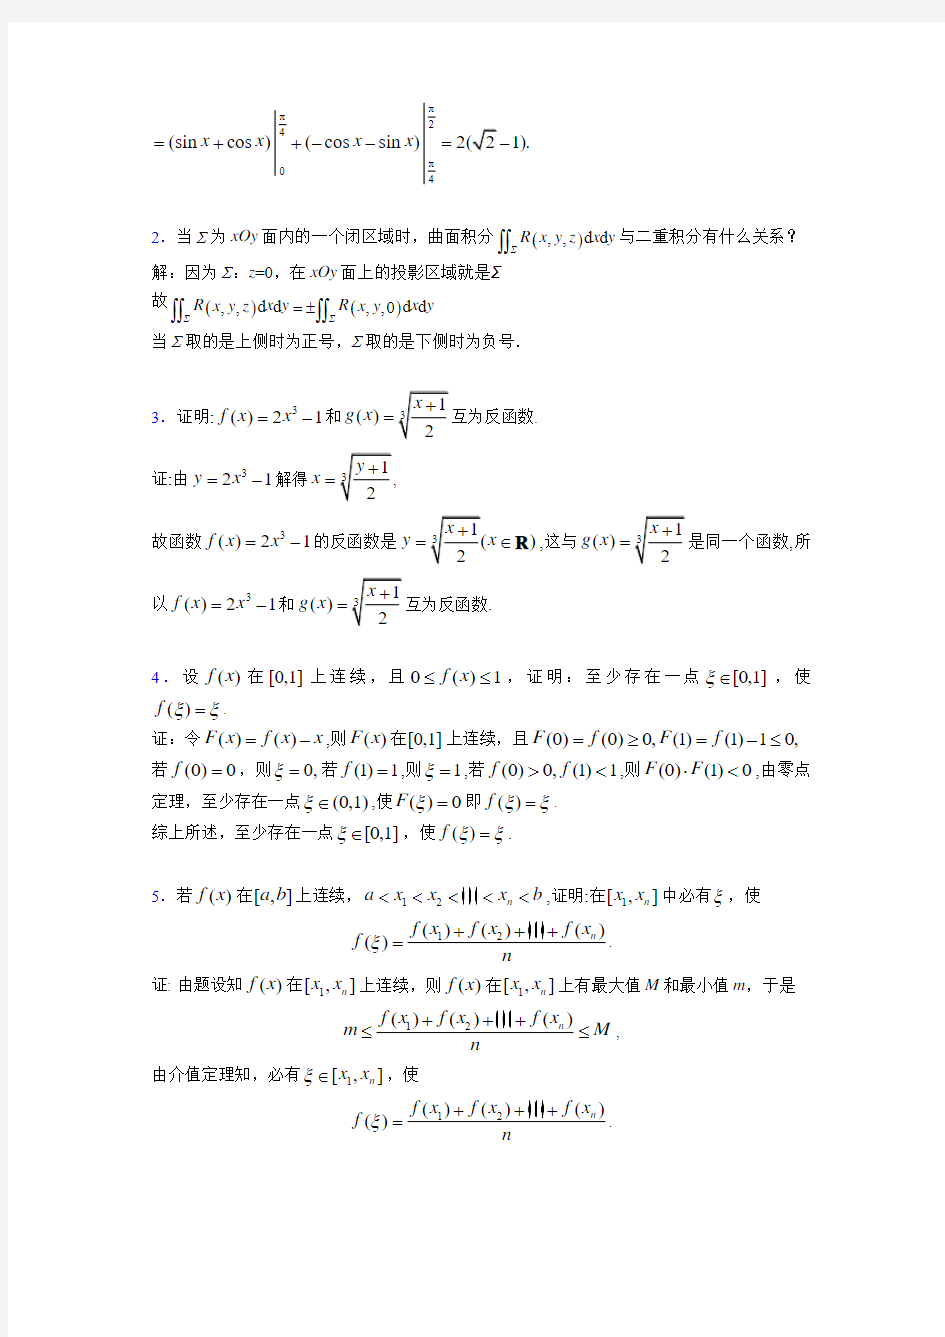 2019新版考研数学模拟题库(含参考答案)